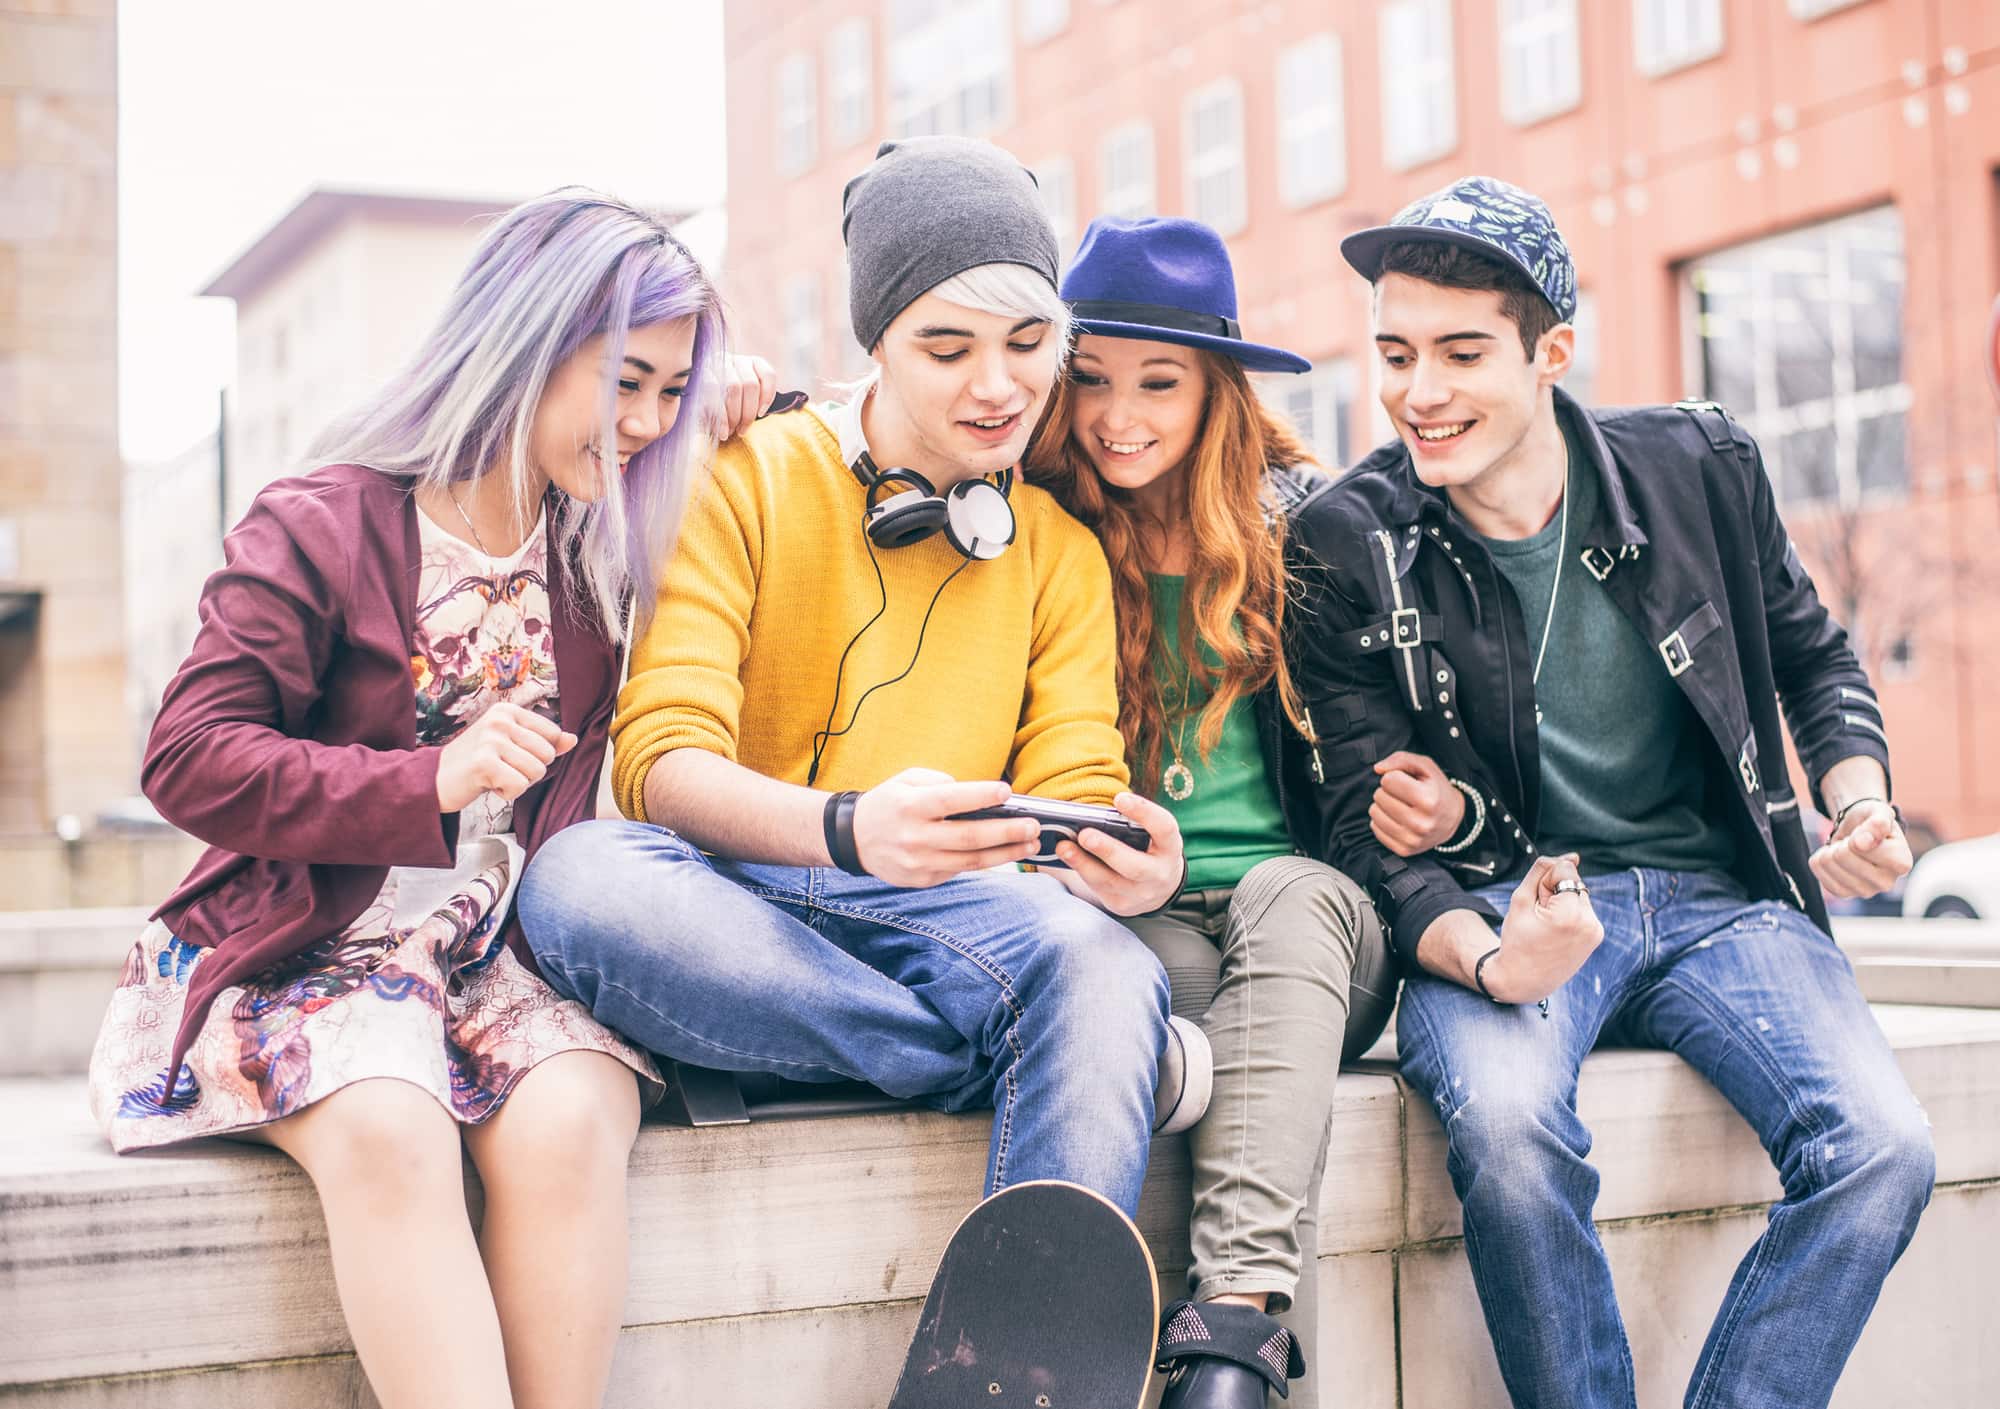 Teenagers meeting outdoors